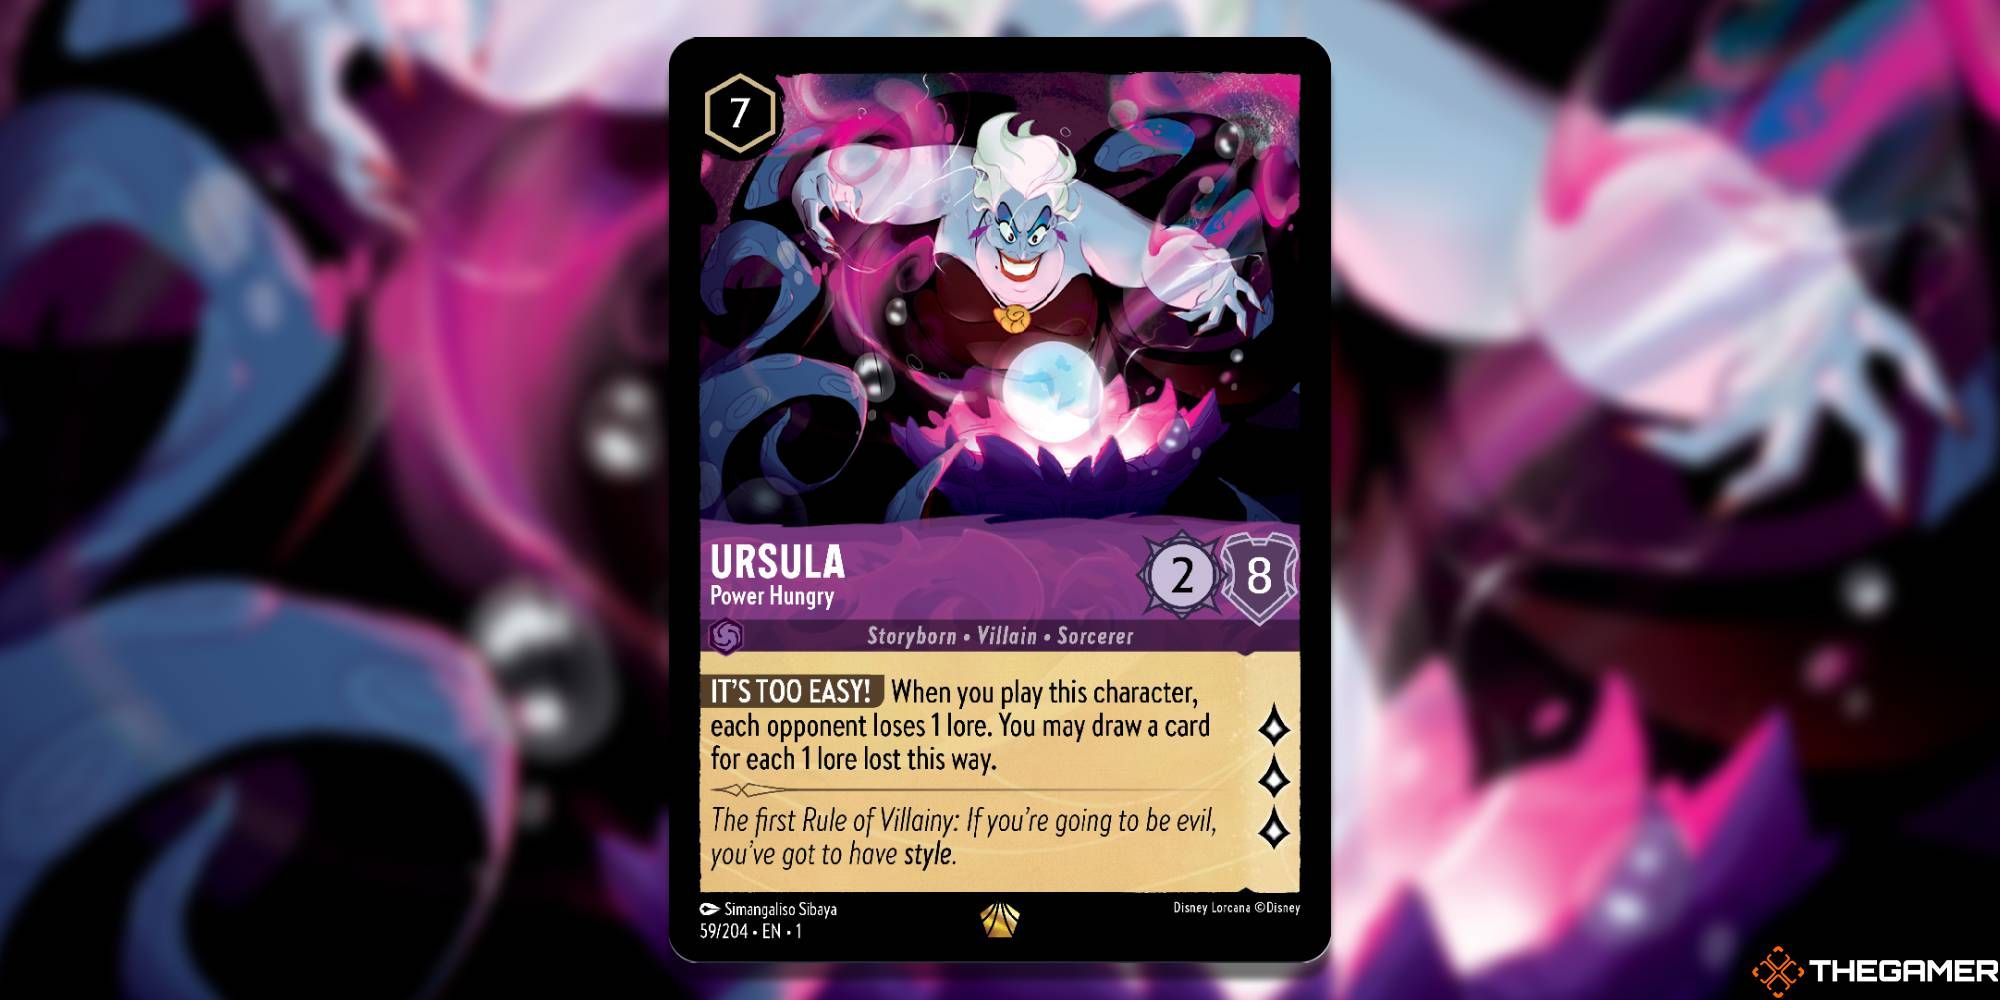 Ursula, PH-1